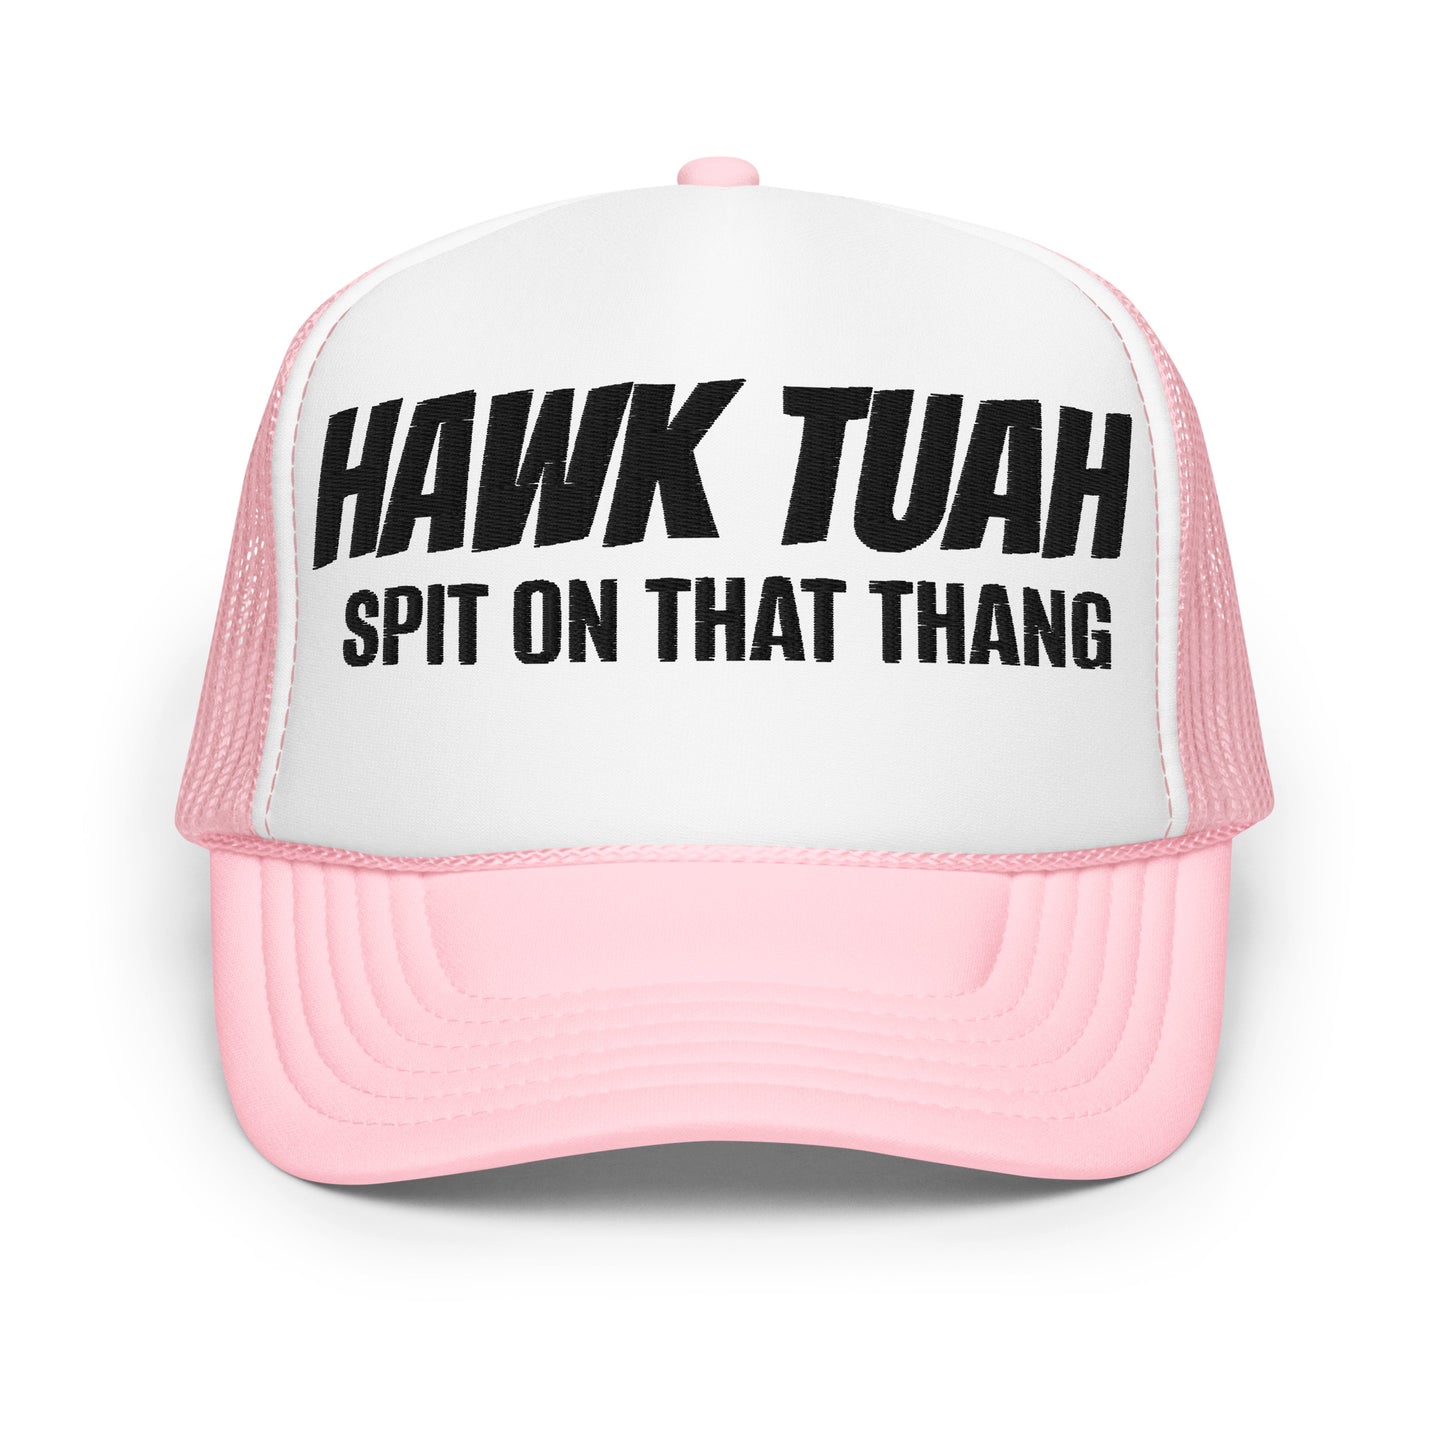 Hawk Tuah Unisex Foam Trucker Hat